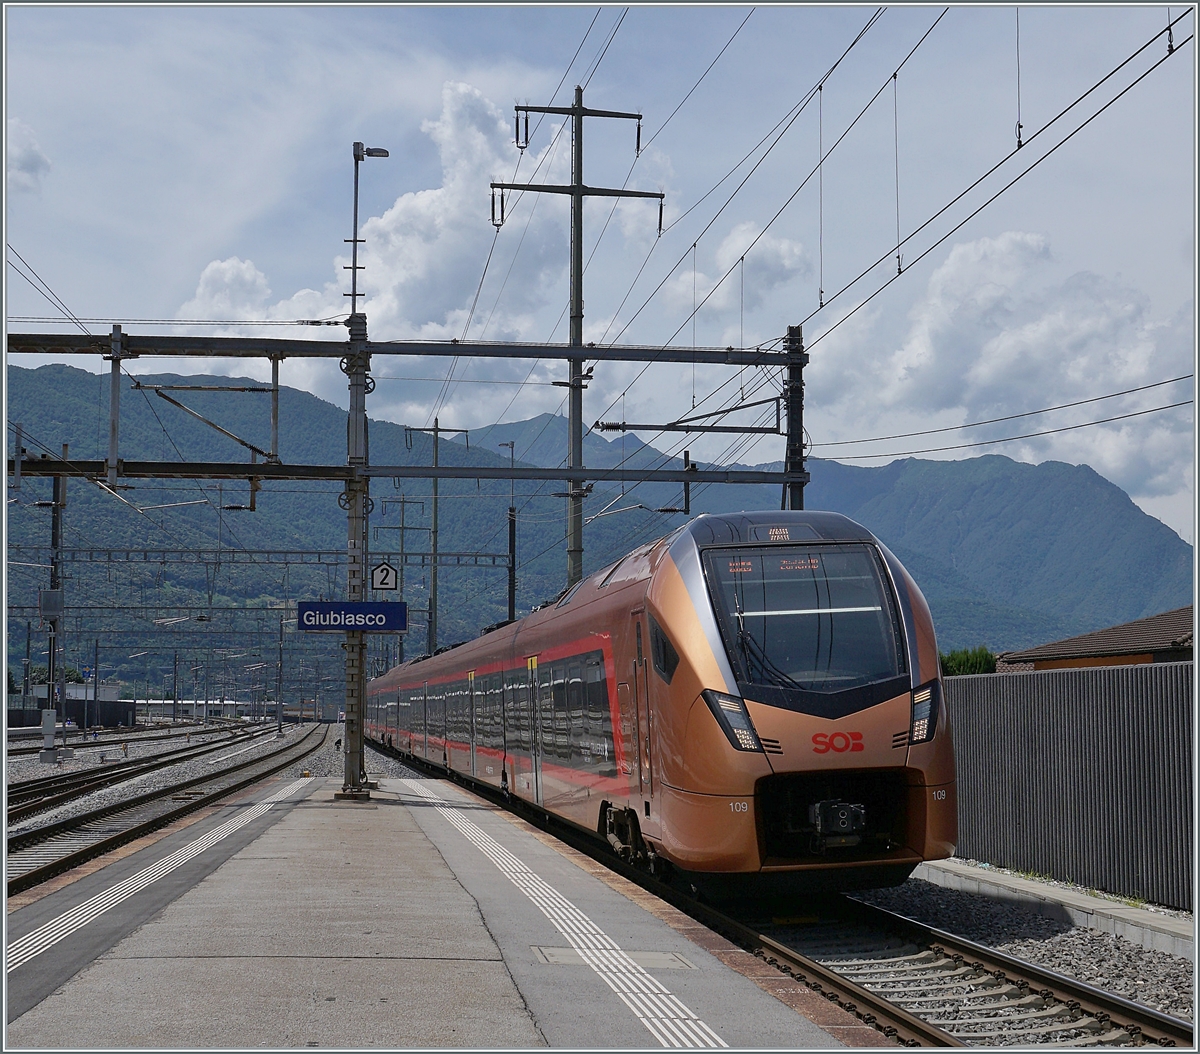 Der SOB RABe 526 103 und ein weiterer sind als  Treno Gotthardo  von Locarno nach Zürich unterwegs und erreichen Giubiasco. 

23. Juni 2021